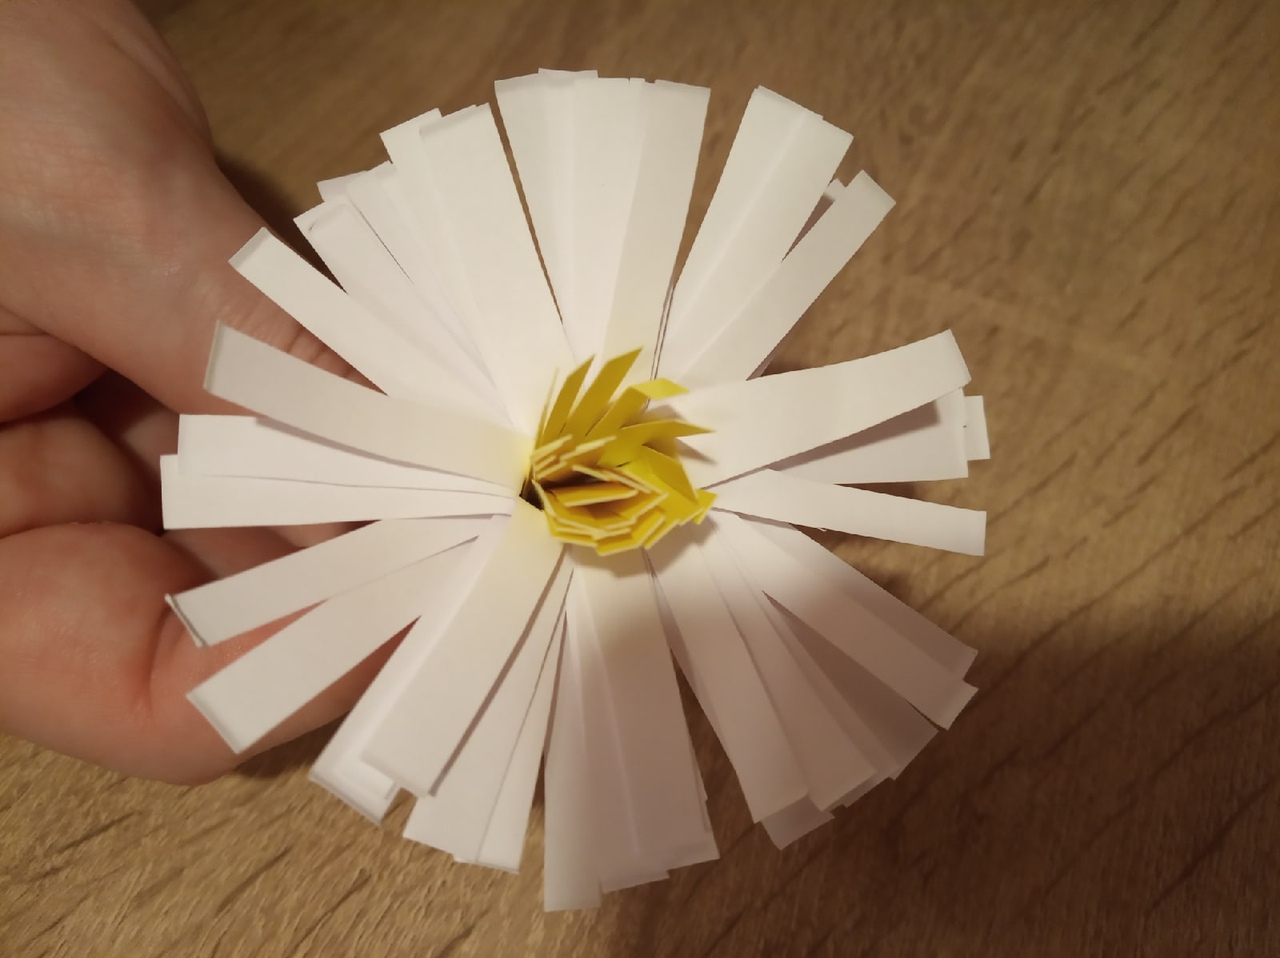 Делаем цветок ромашка своими руками из различных материалов